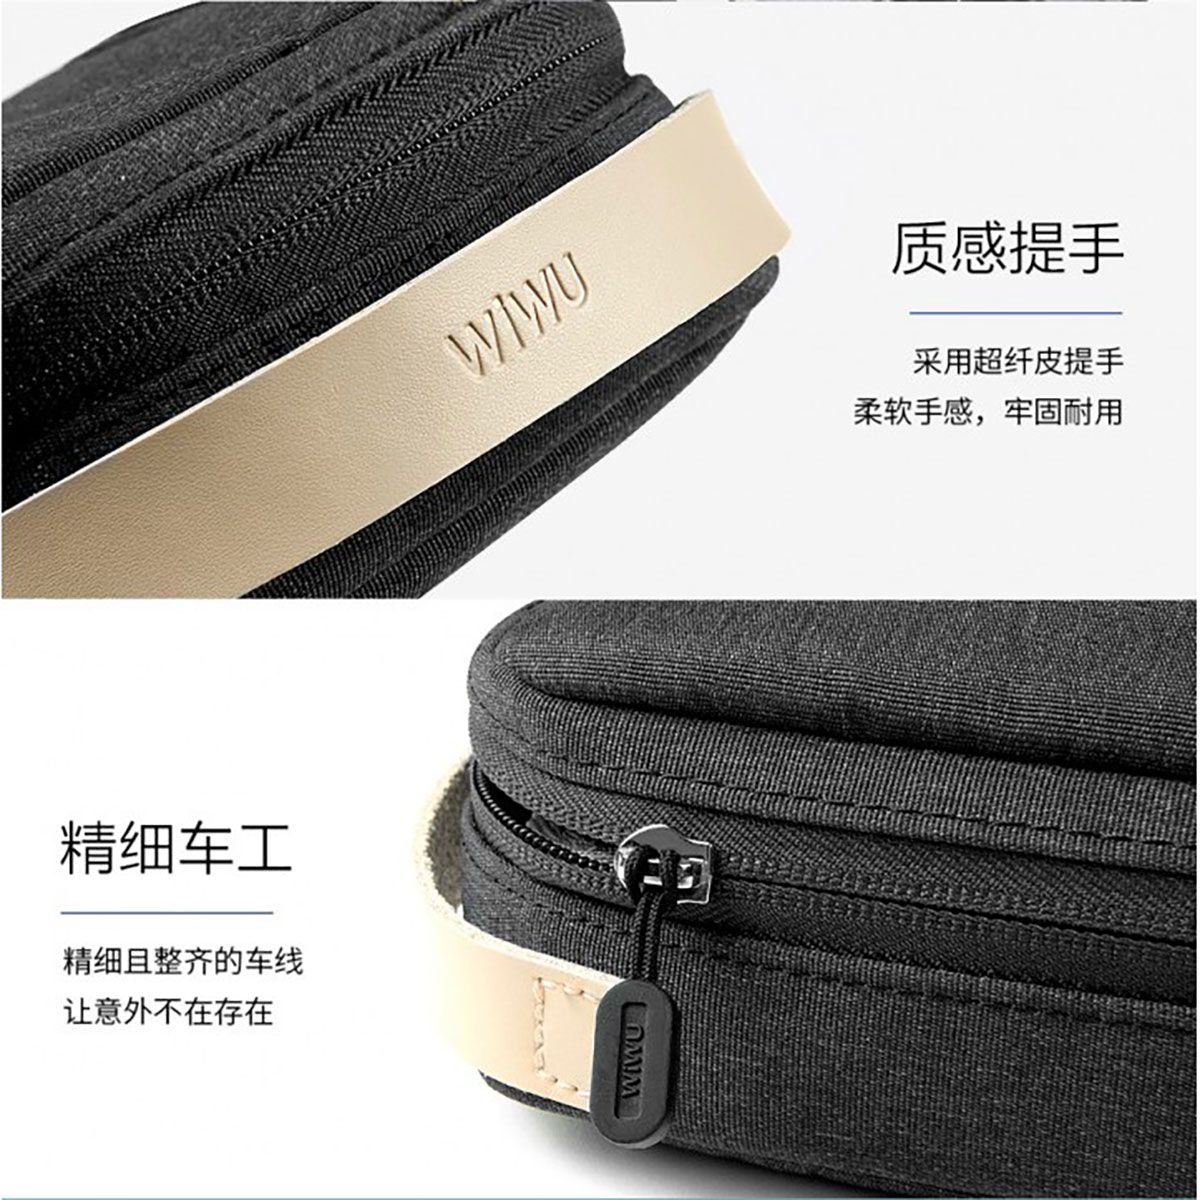 کیف دستی مردانه ویوو مدل Cozy GM1811 -  - 9